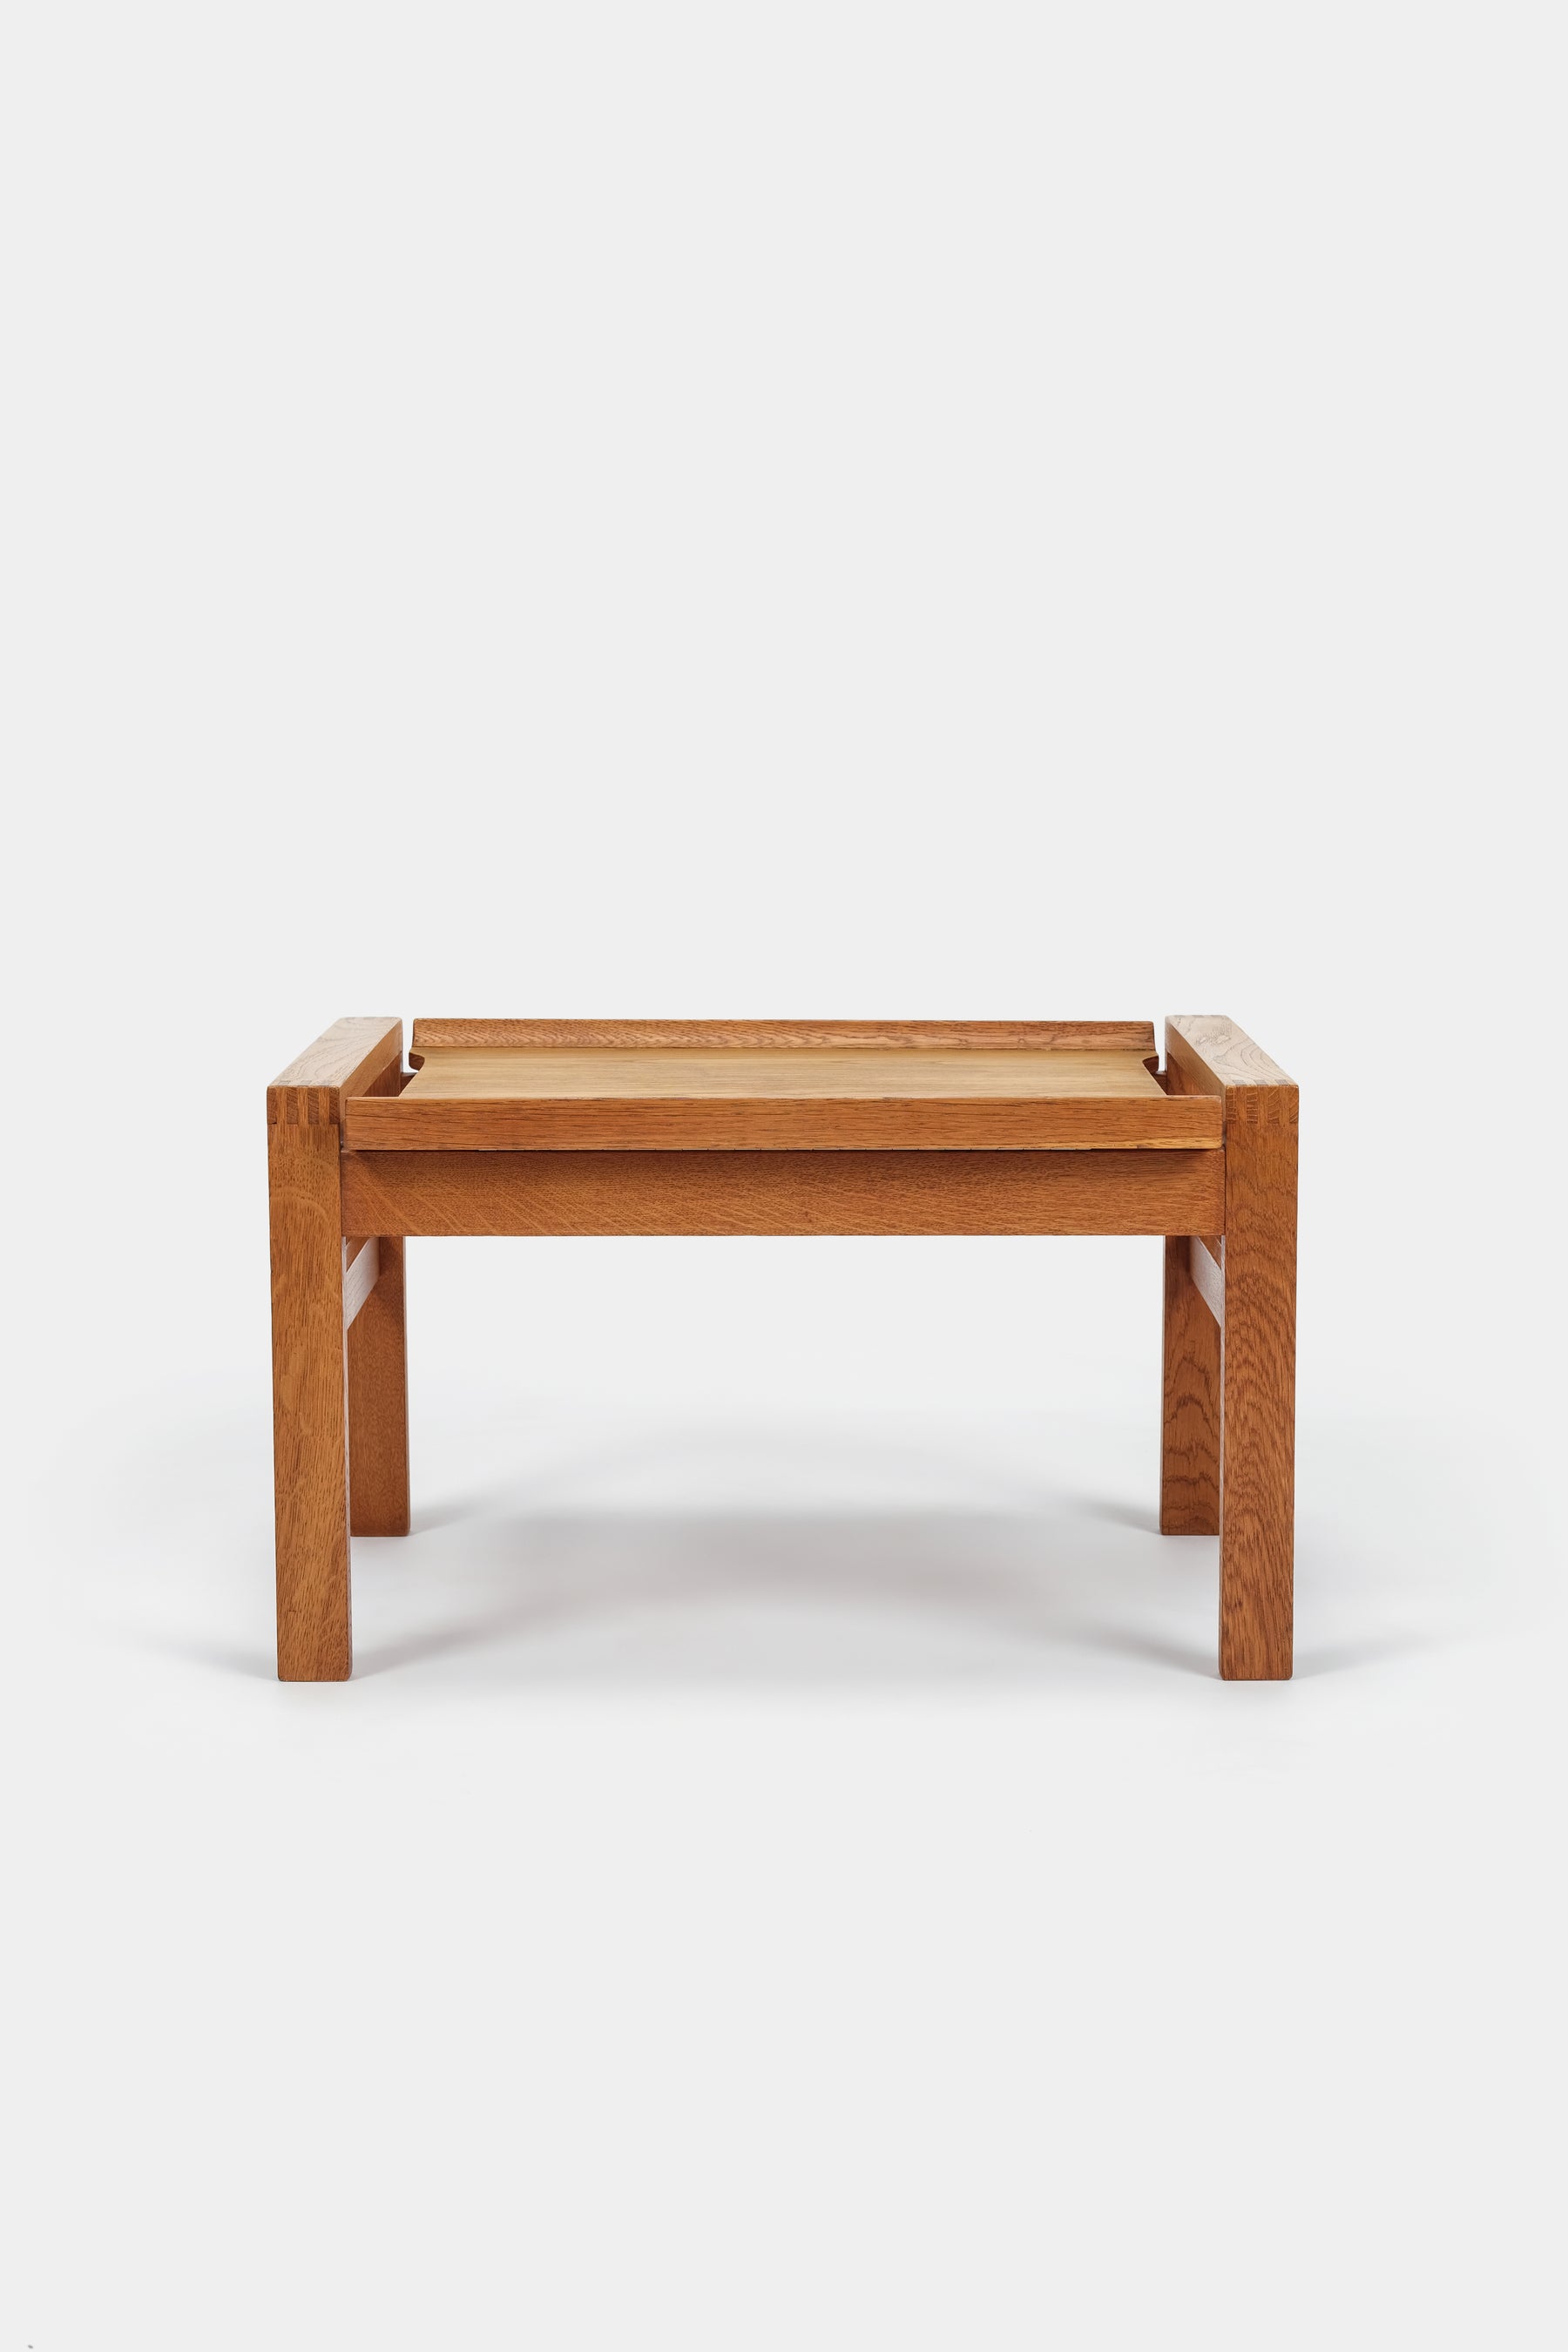 Borge Mogensen, Small Table, Denmark, 60s